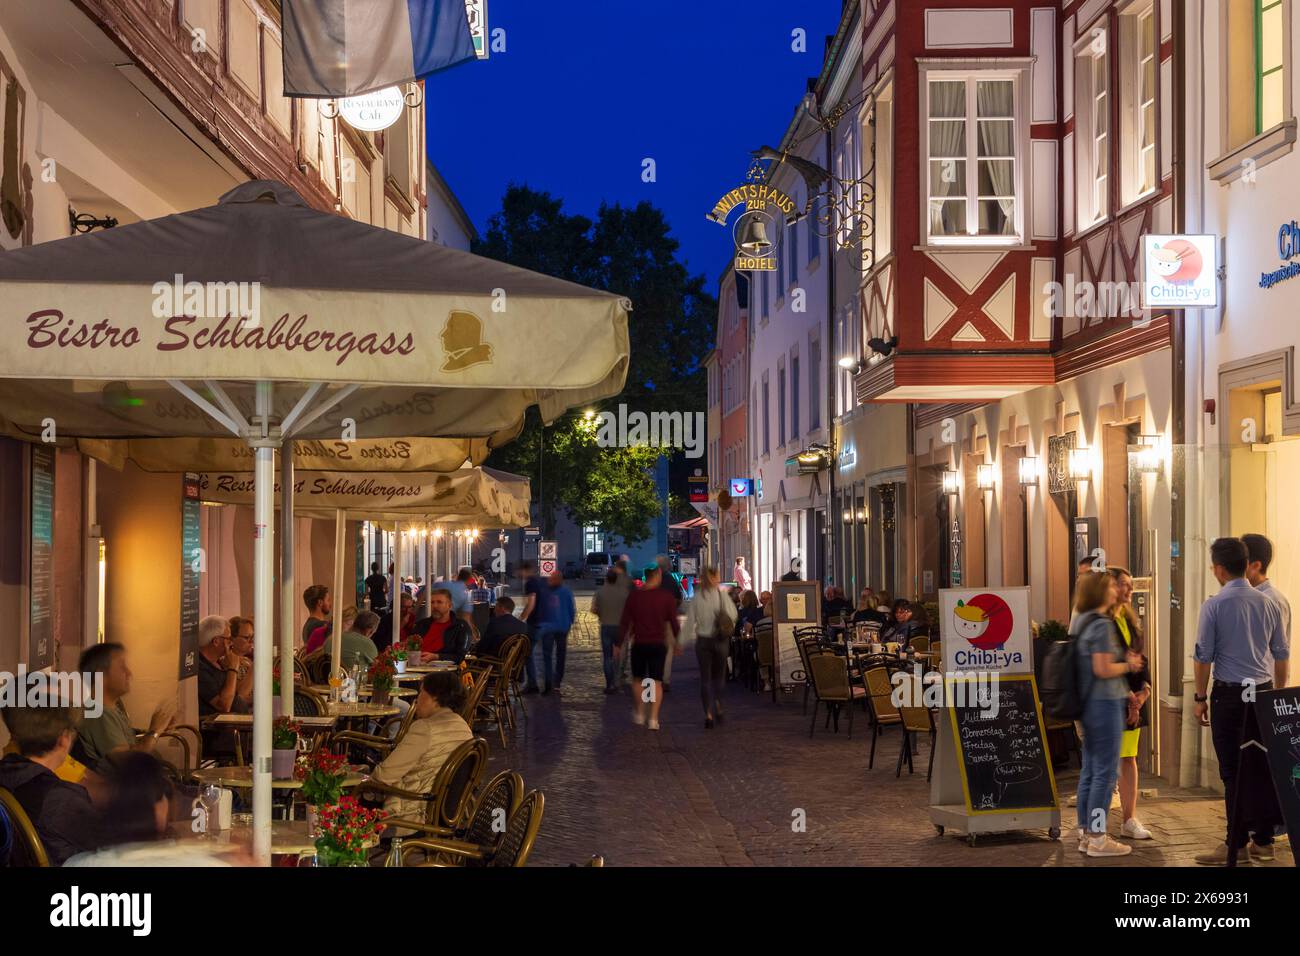 Trèves, rue Glockenstraße dans la vieille ville, restaurant en plein air, région de Moselle, Rhénanie-Palatinat, Allemagne Banque D'Images